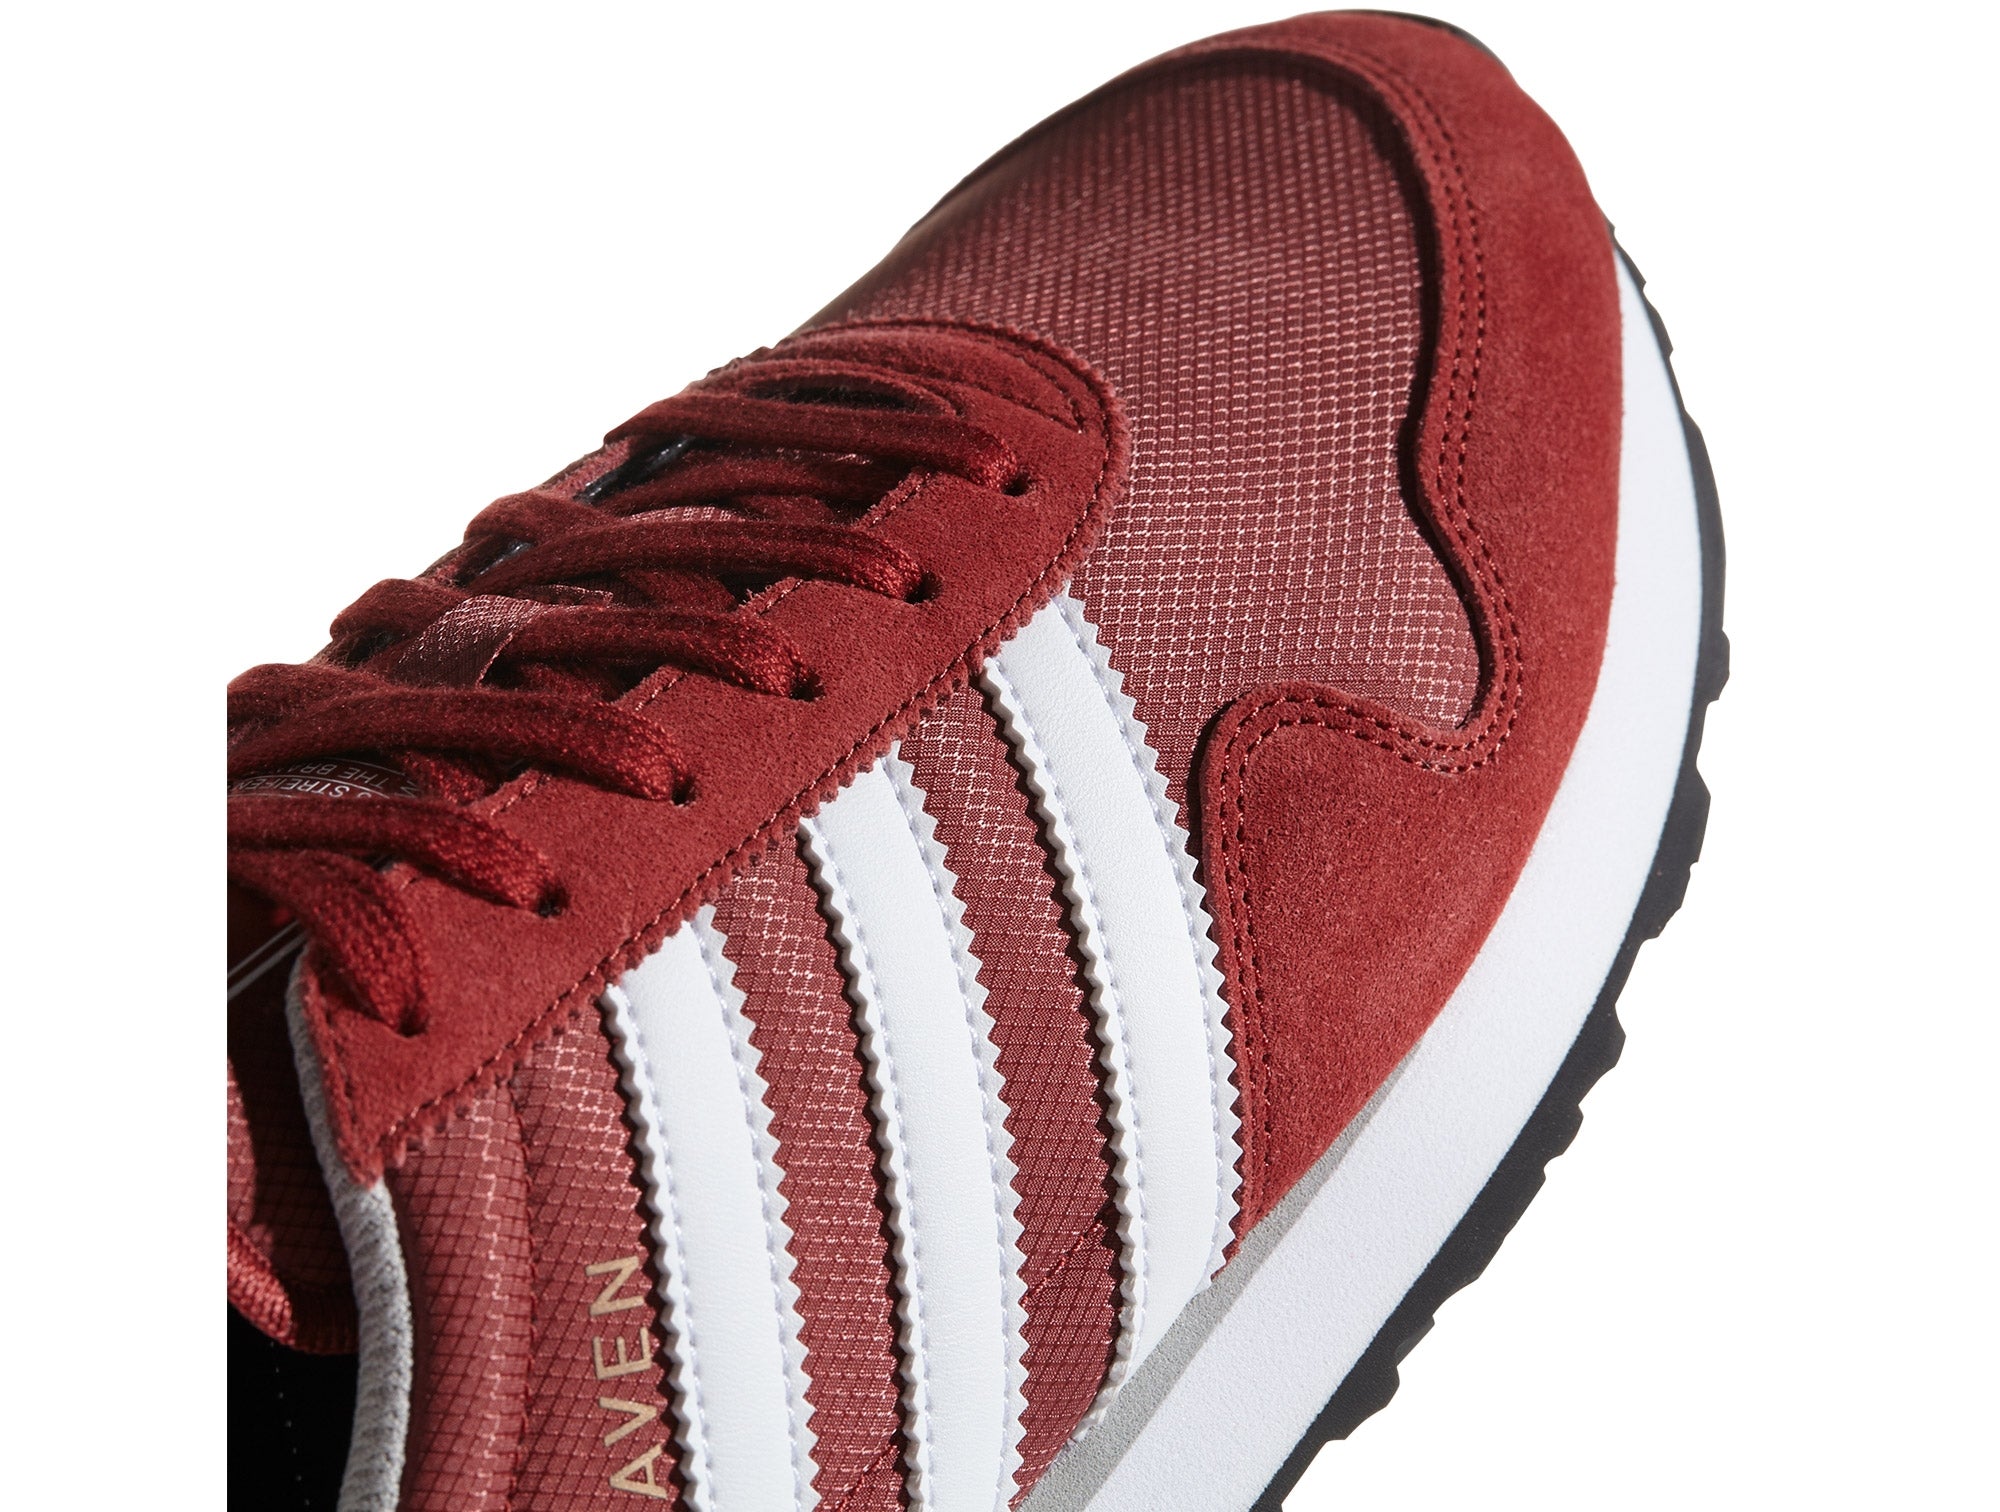 Buena voluntad Frenesí Contribución Zapatilla Adidas Haven Hombre Rojo - Real Kicks